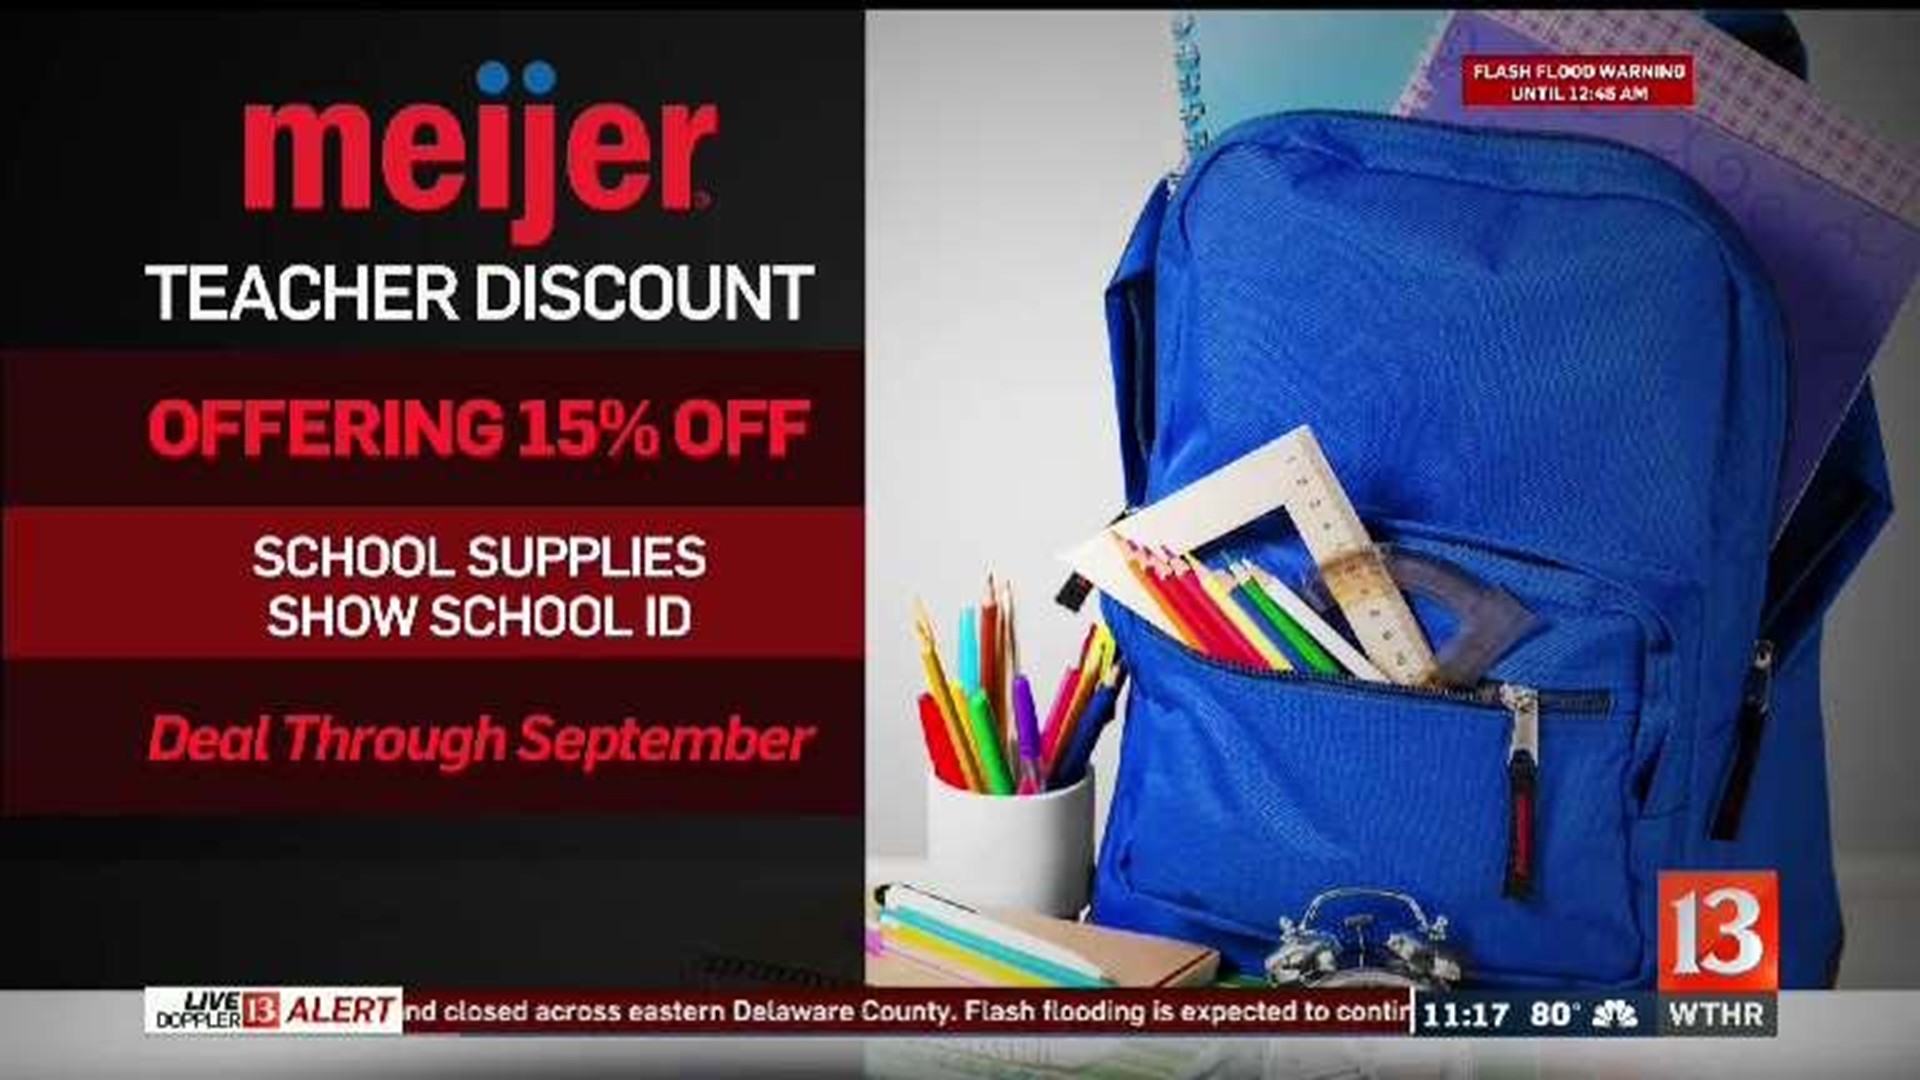 Meijer's back-to-school teacher coupon returns